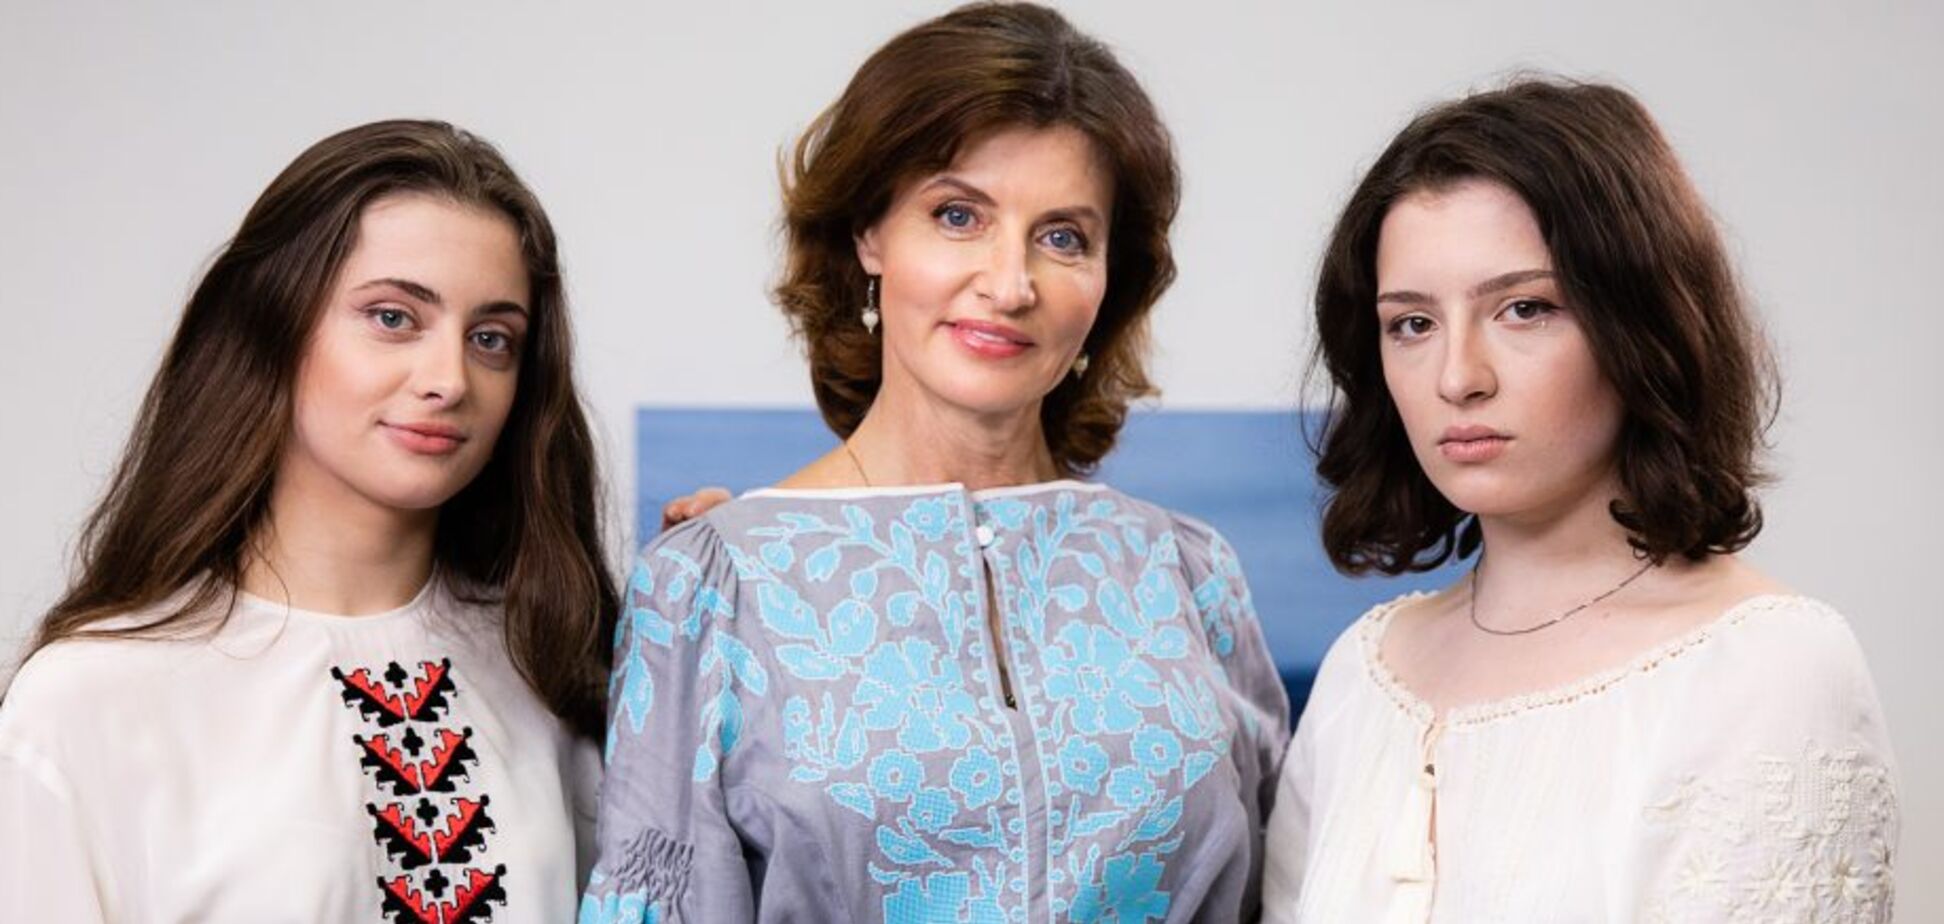 Семья Порошенко призвала провести онлайн-парад вышиванок: пусть объединяет украинцев!